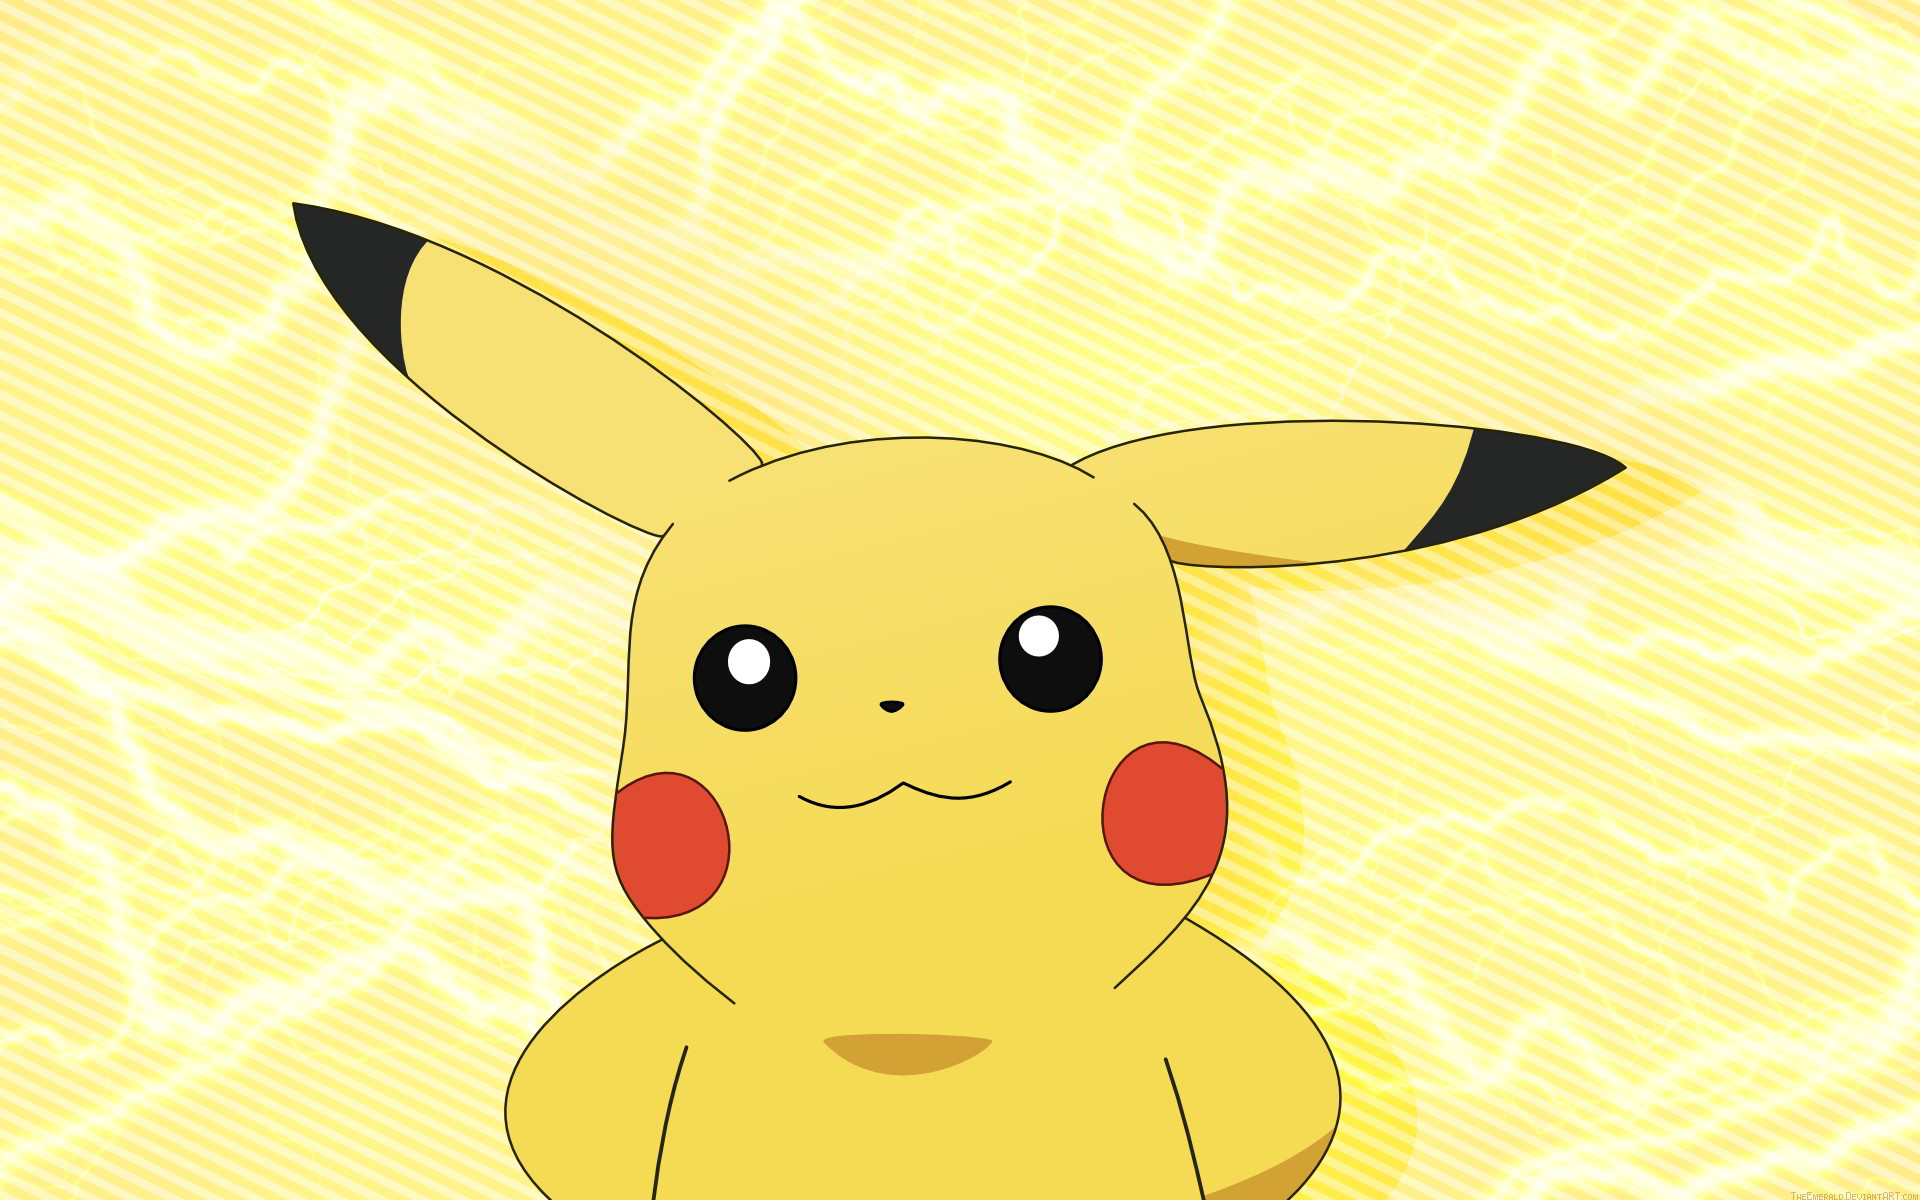 Hình nền pikachu dễ thương: Hình nền Pikachu dễ thương không chỉ là một thủ thuật trang trí nền tảng yêu thích của bạn, mà còn đem lại cảm giác thoải mái và thư giãn. Những hình nền Pikachu dễ thương sẽ khiến bạn cảm thấy như đang sống trong thế giới Pokemon và mang lại cho bạn cảm giác thú vị và hạnh phúc trong mỗi ngày.